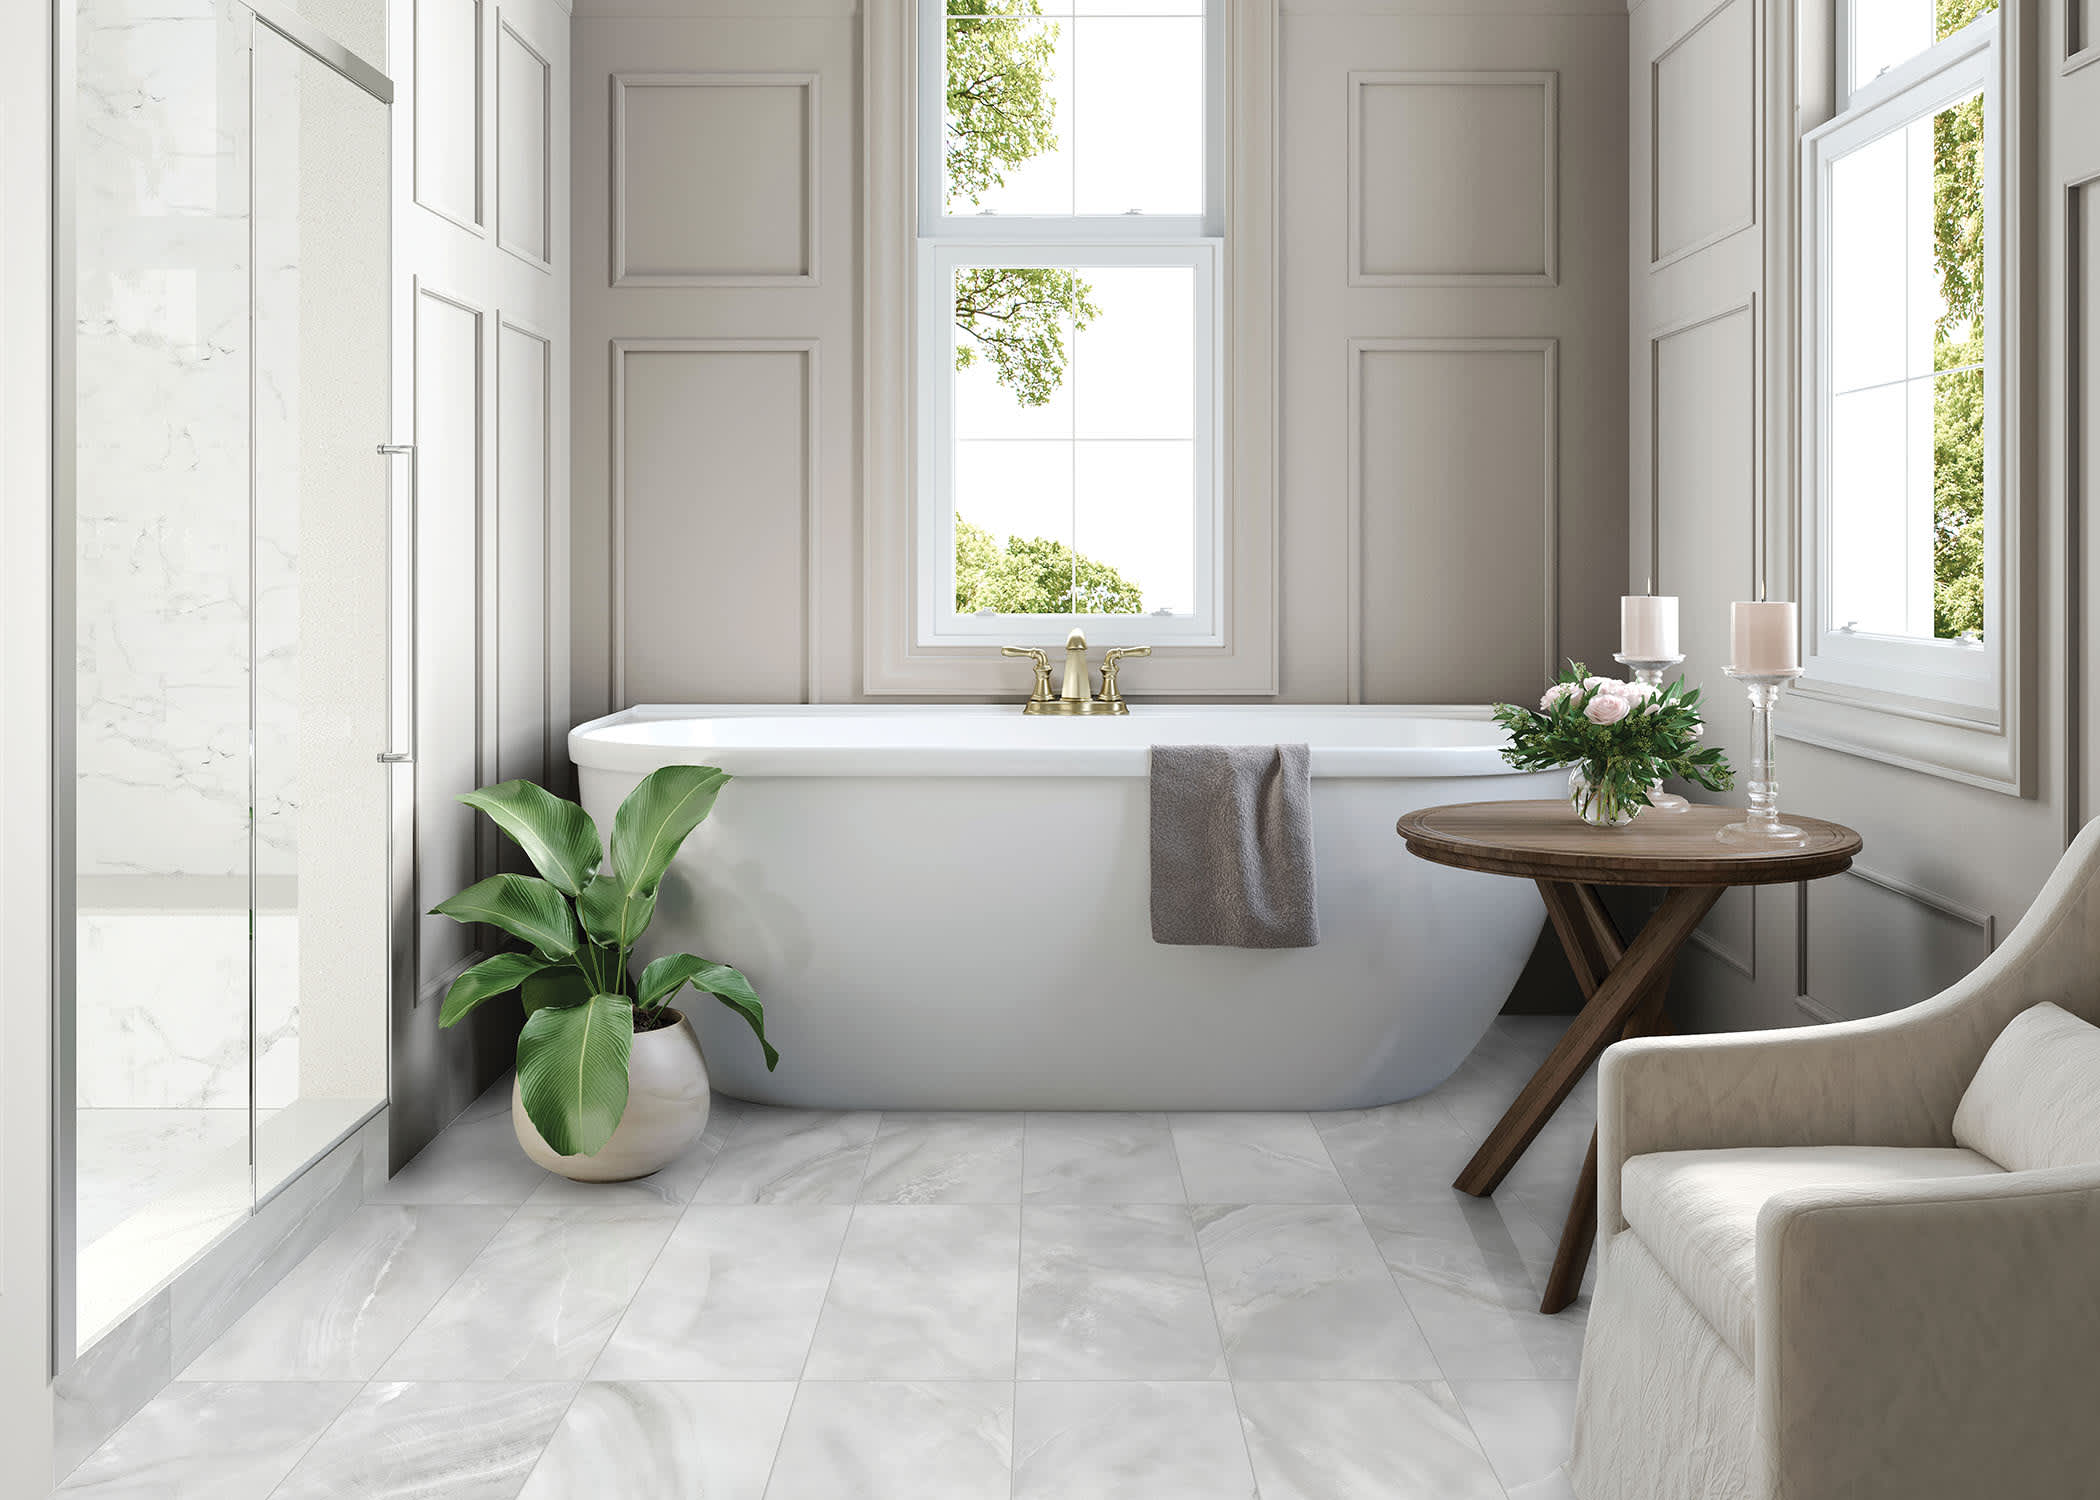 Renaissance matte Porcelain Tile installed in a bathroom